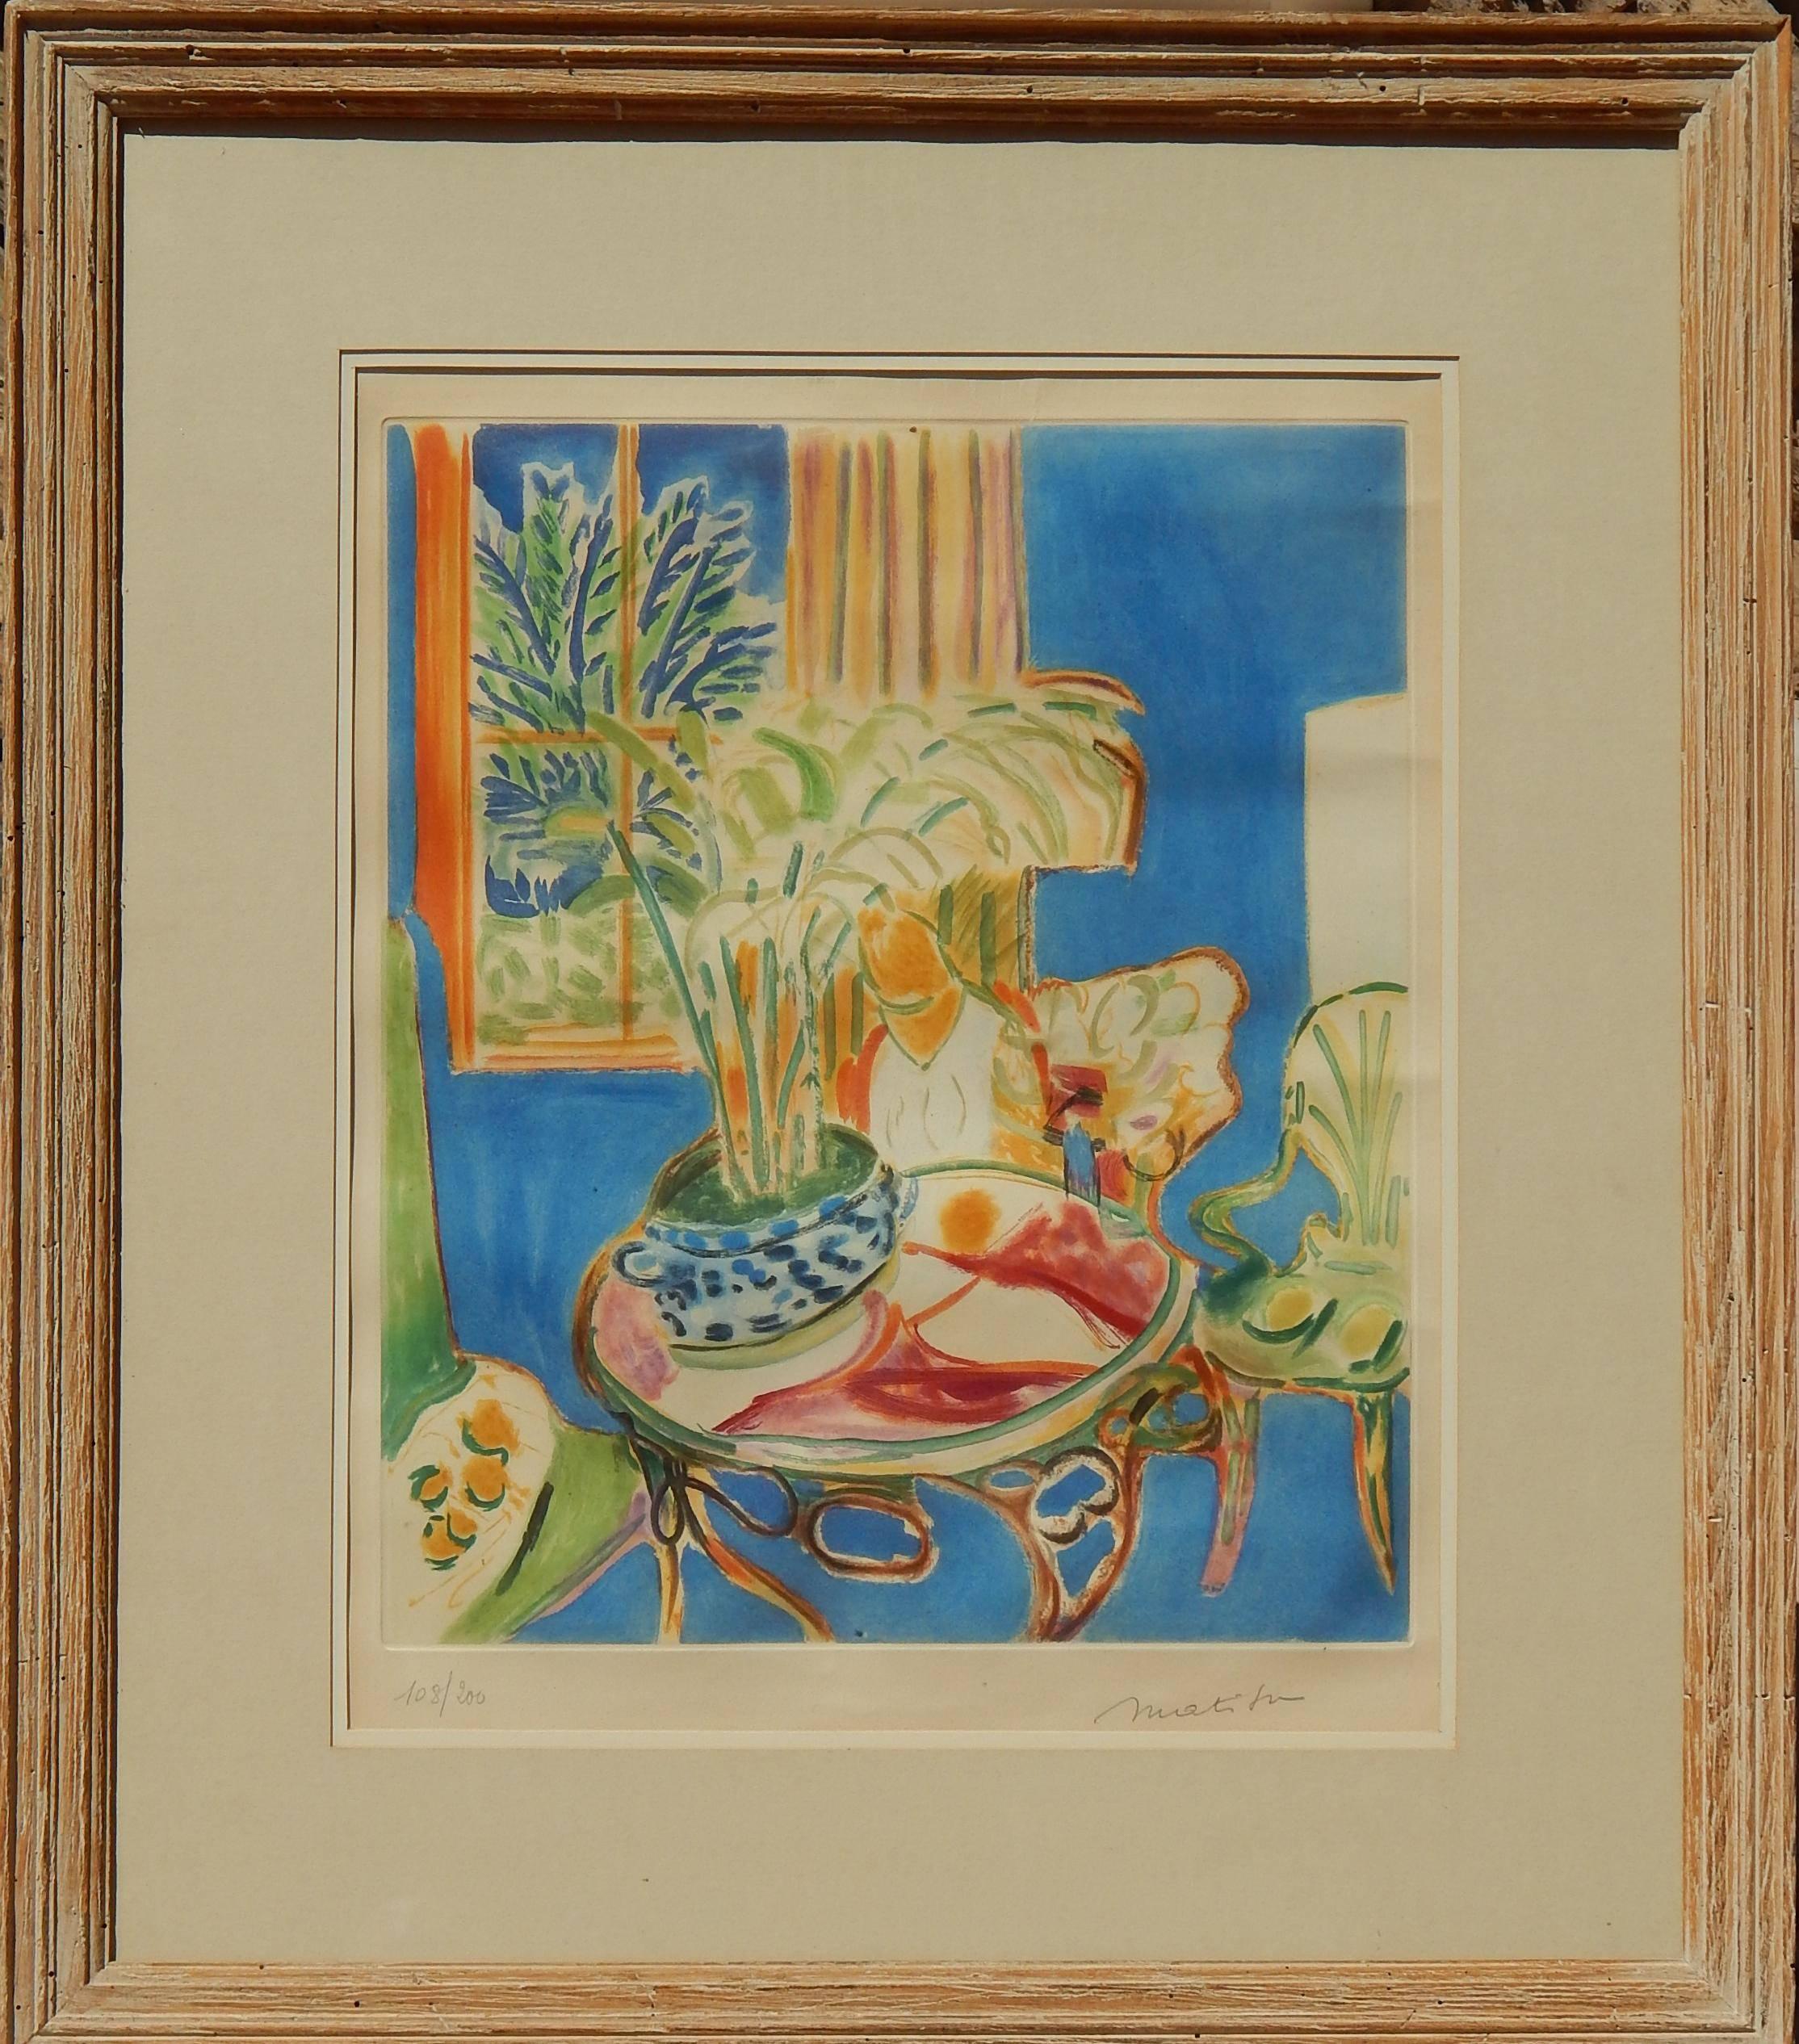 Henri Matisse (1869-1954) original aquatint, 1952.
Signed in pencil 